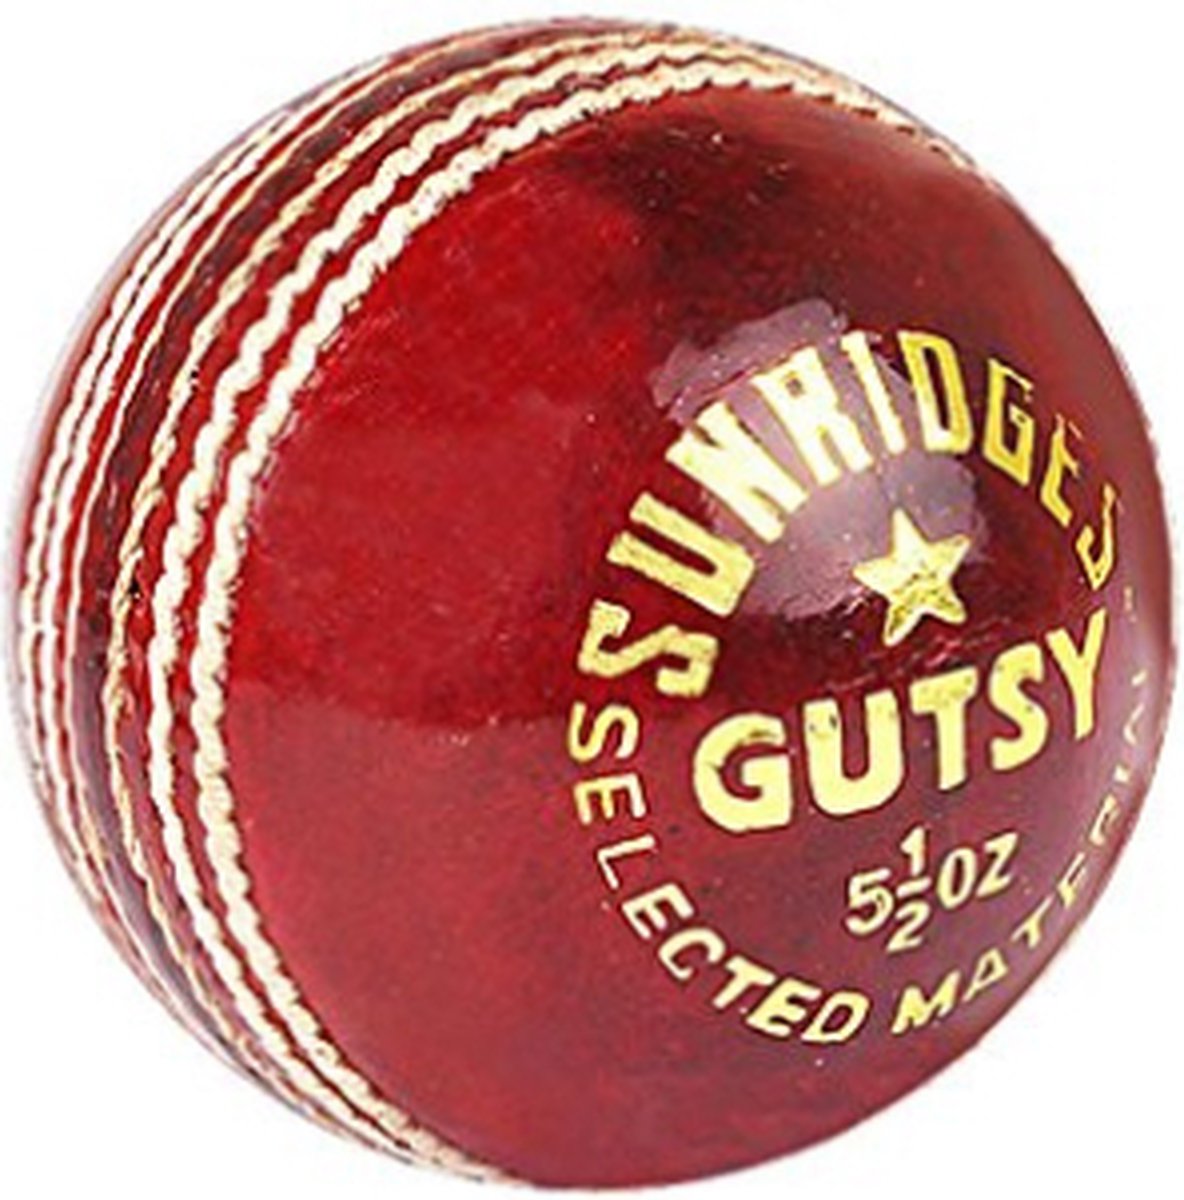 SS Gutsy Leren Cricketbal (Set van 1) | Rood | Standaardformaat | Unisex Volwassene | Ideaal voor Club en Wedstrijden | Kwalitatieve Leren Constructie